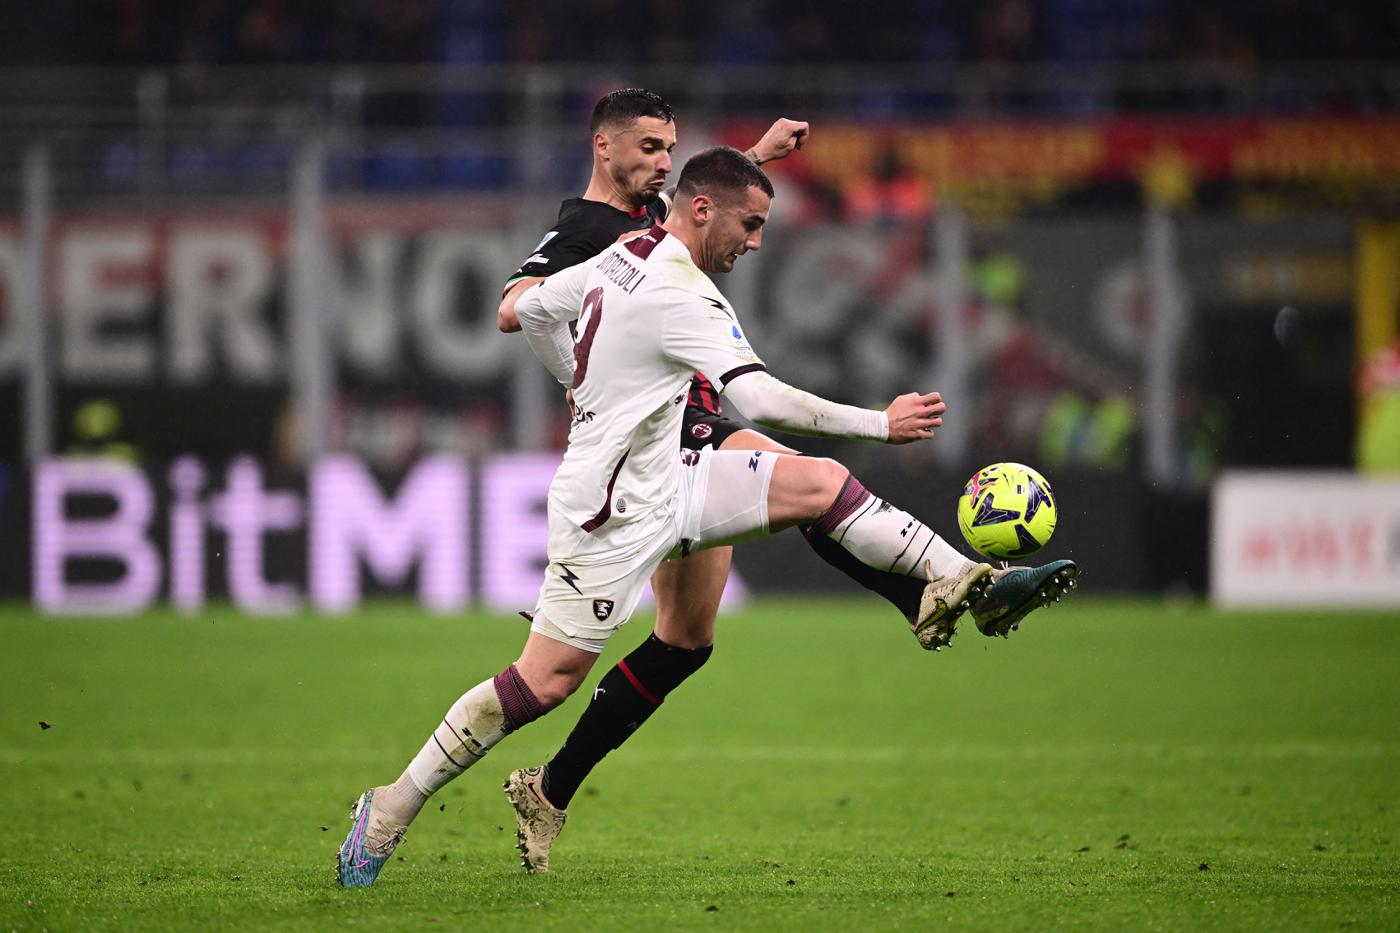 AC Milan v Salernitana - 1-1. Mistrzostwa Włoch, runda 26. Przegląd meczu, statystyki.